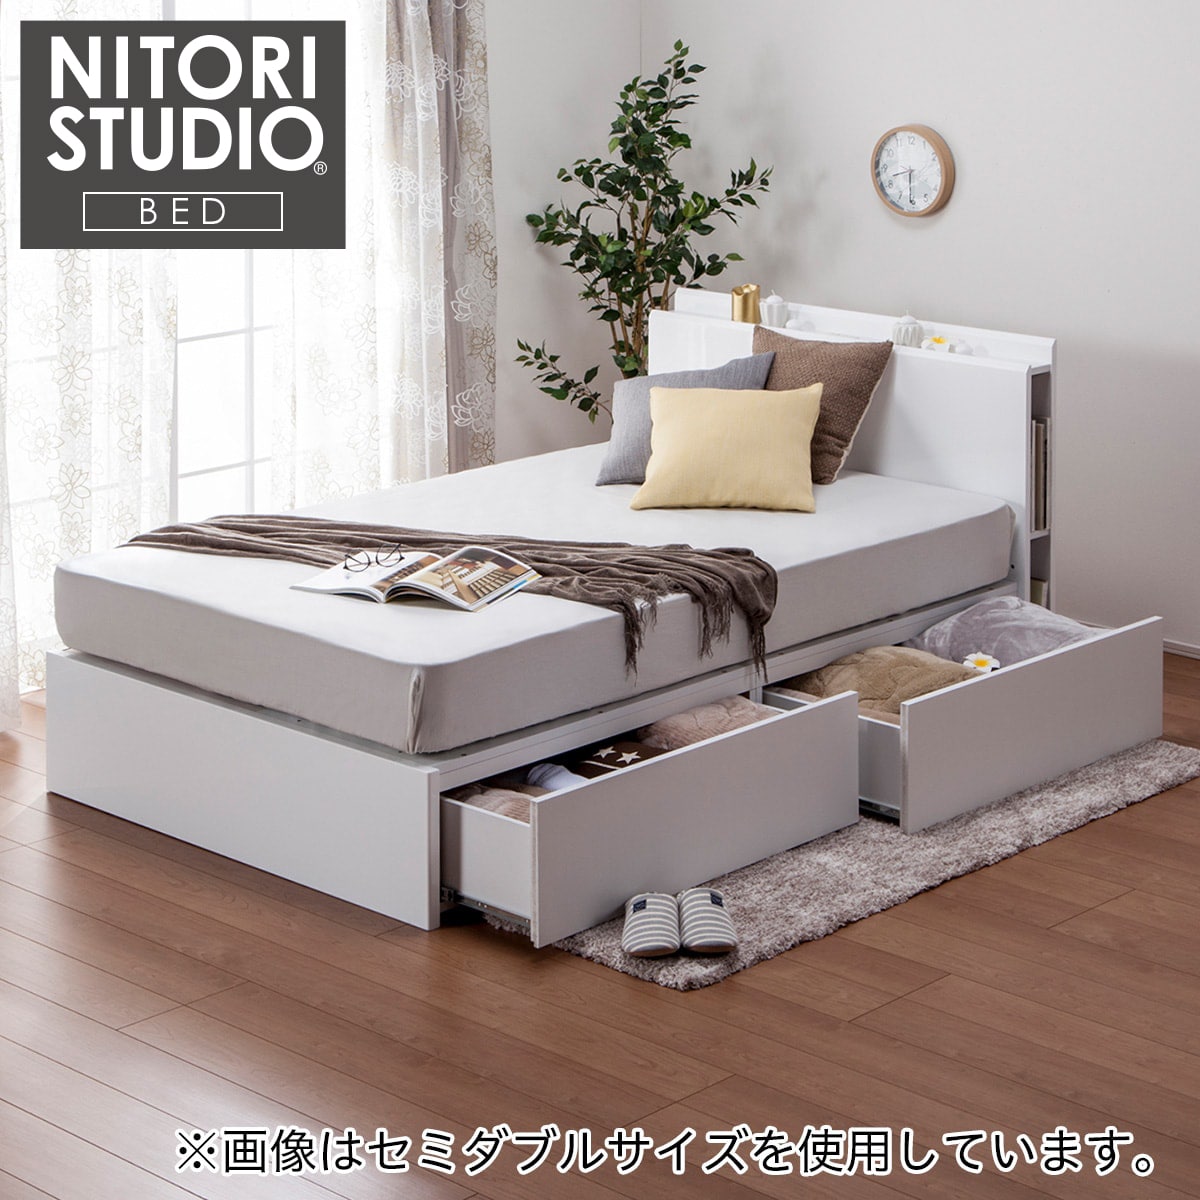 シングルベッドフレーム | ニトリネット【公式】 家具・インテリア通販 